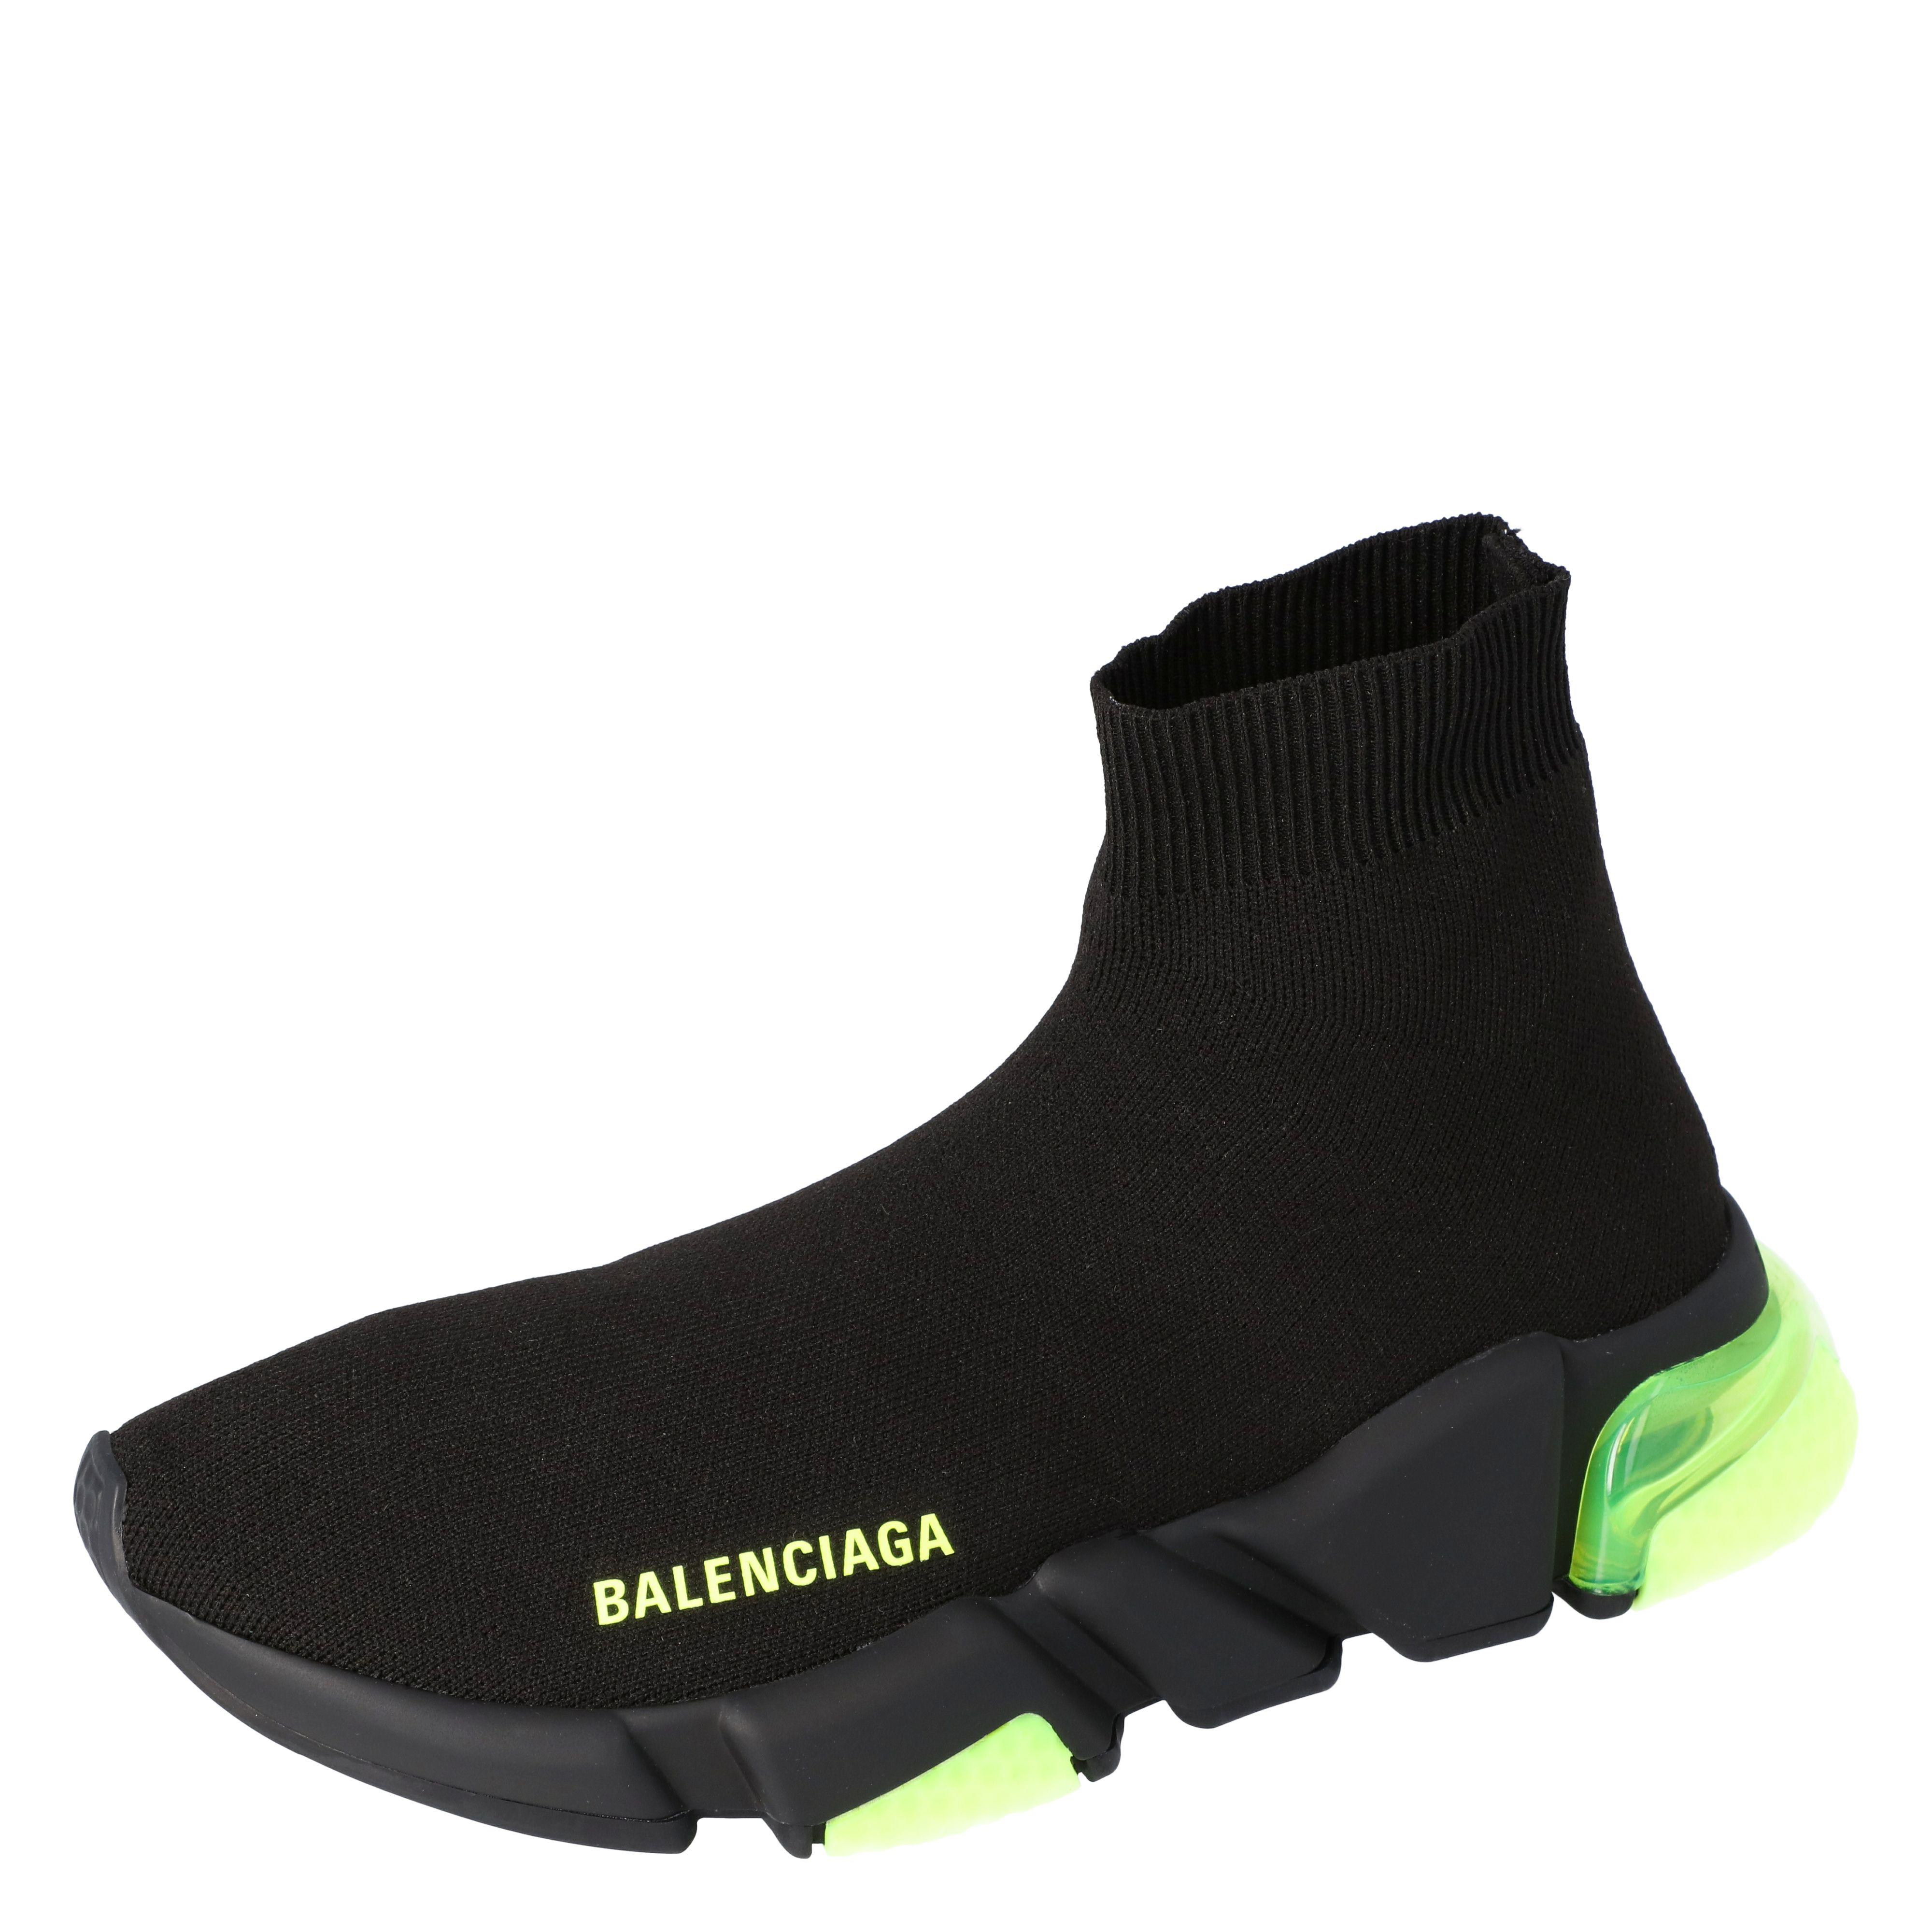 the new balenciaga sneakers